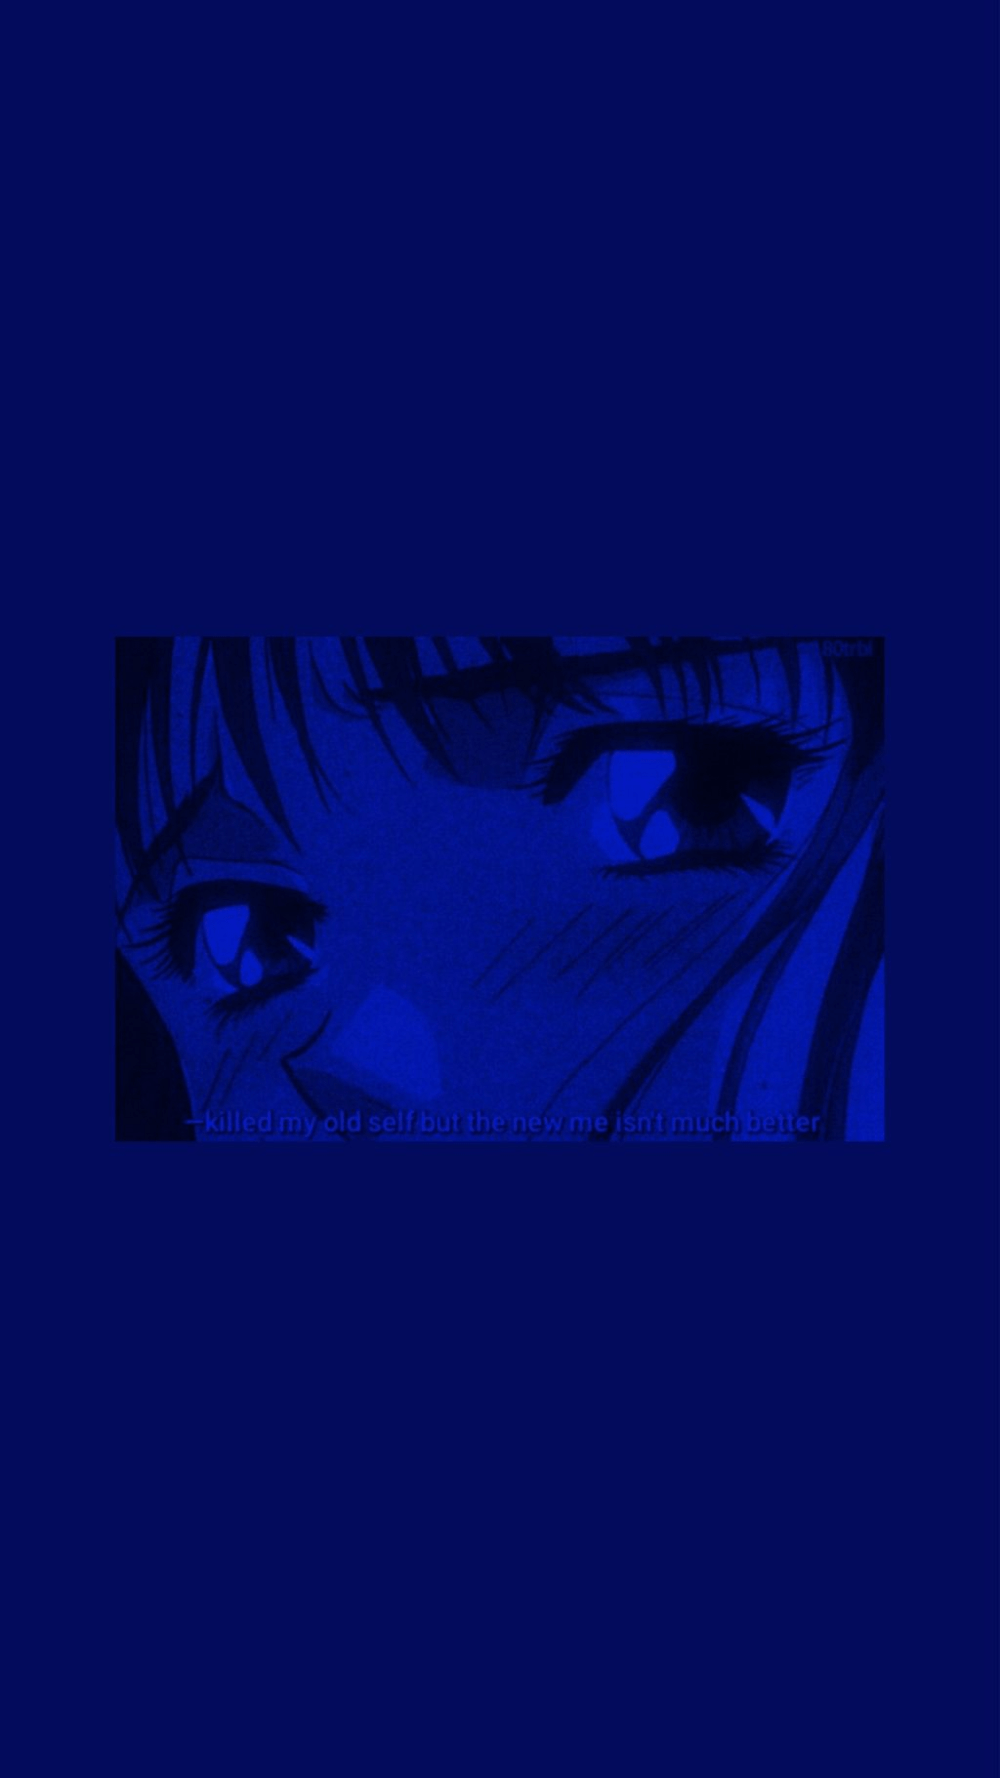 Aesthetic anime wallpaper blue - Dark blue, blue anime